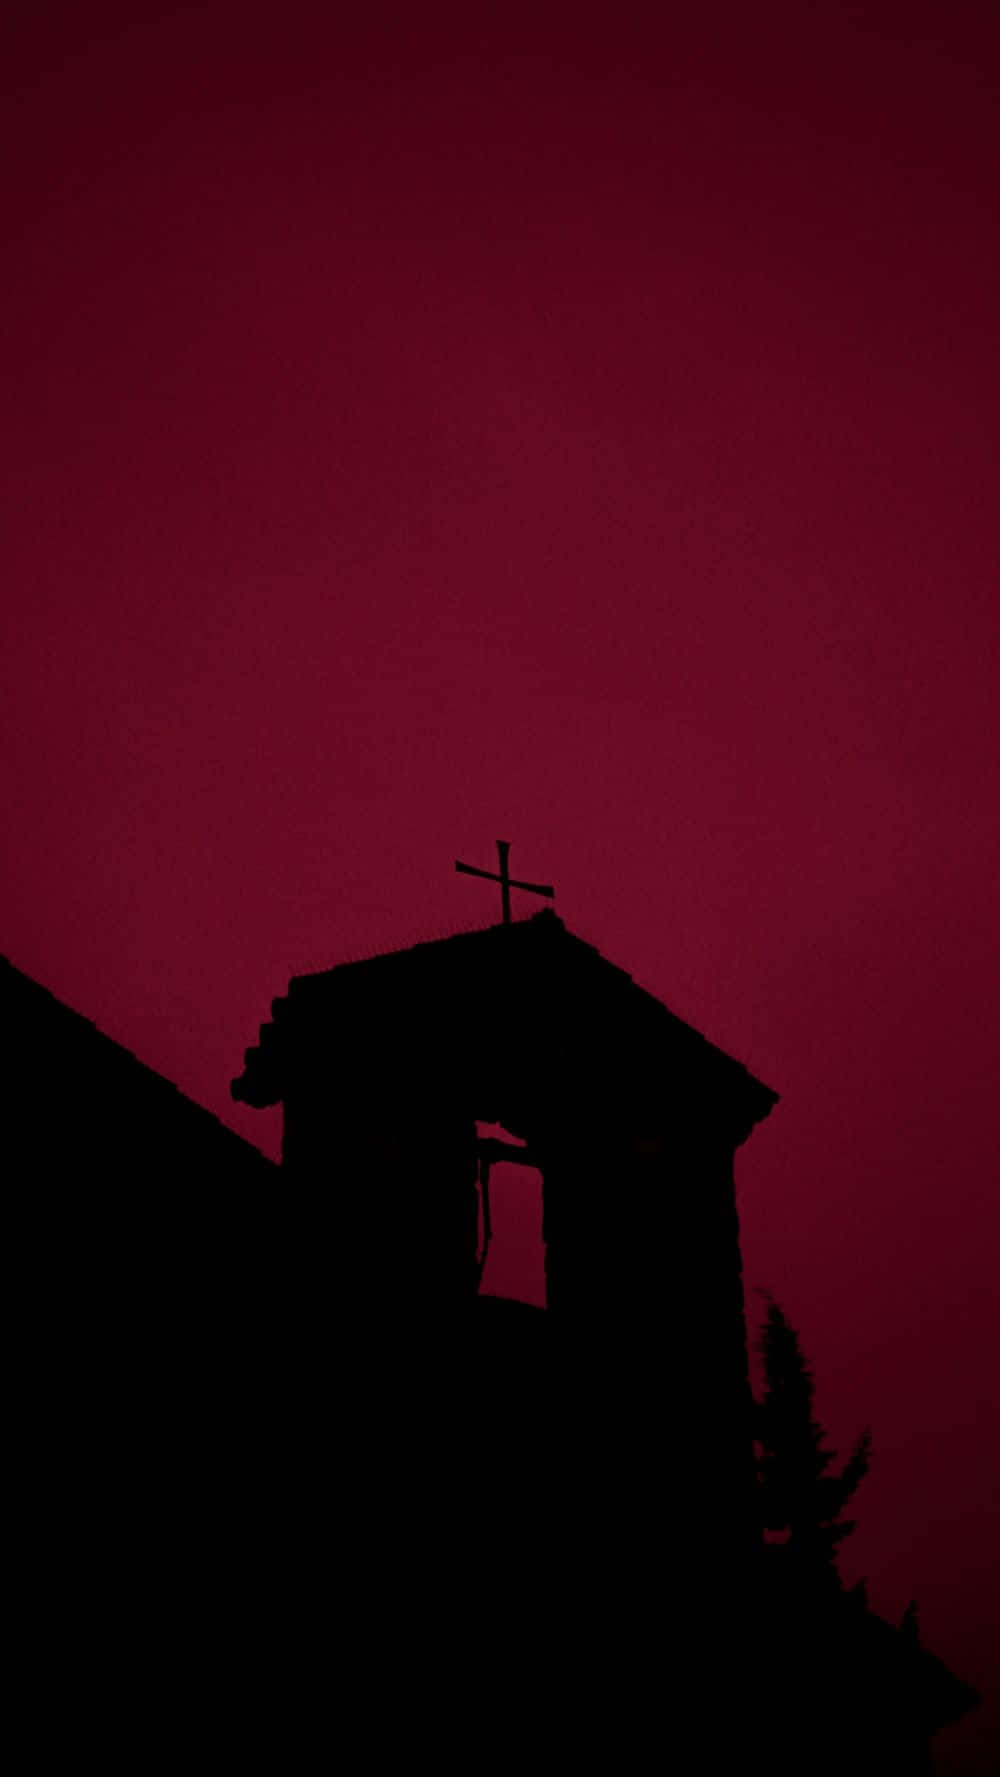 Chiesasilhouette Estetica Nera E Rossa Sfondo